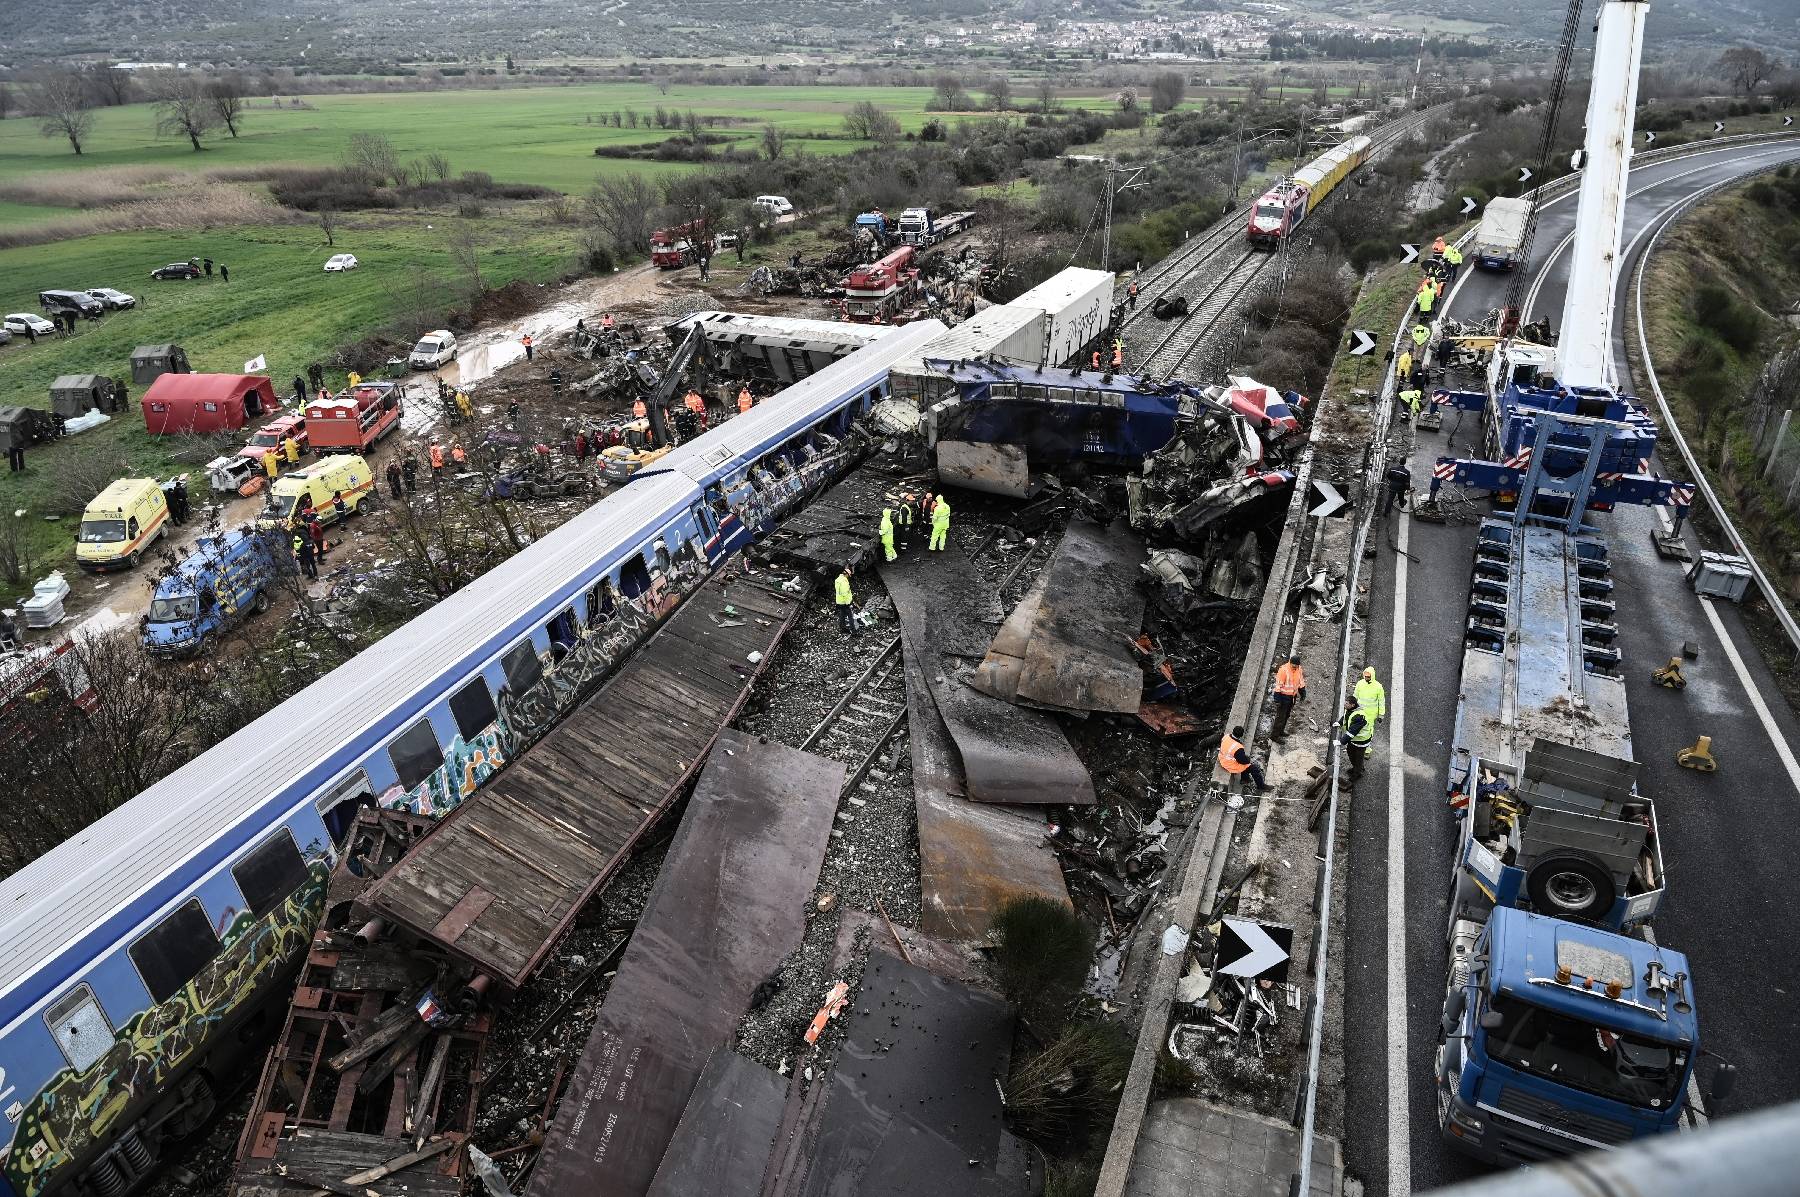 Le deuil et la colère en Grèce après la catastrophe ferroviaire meurtrière